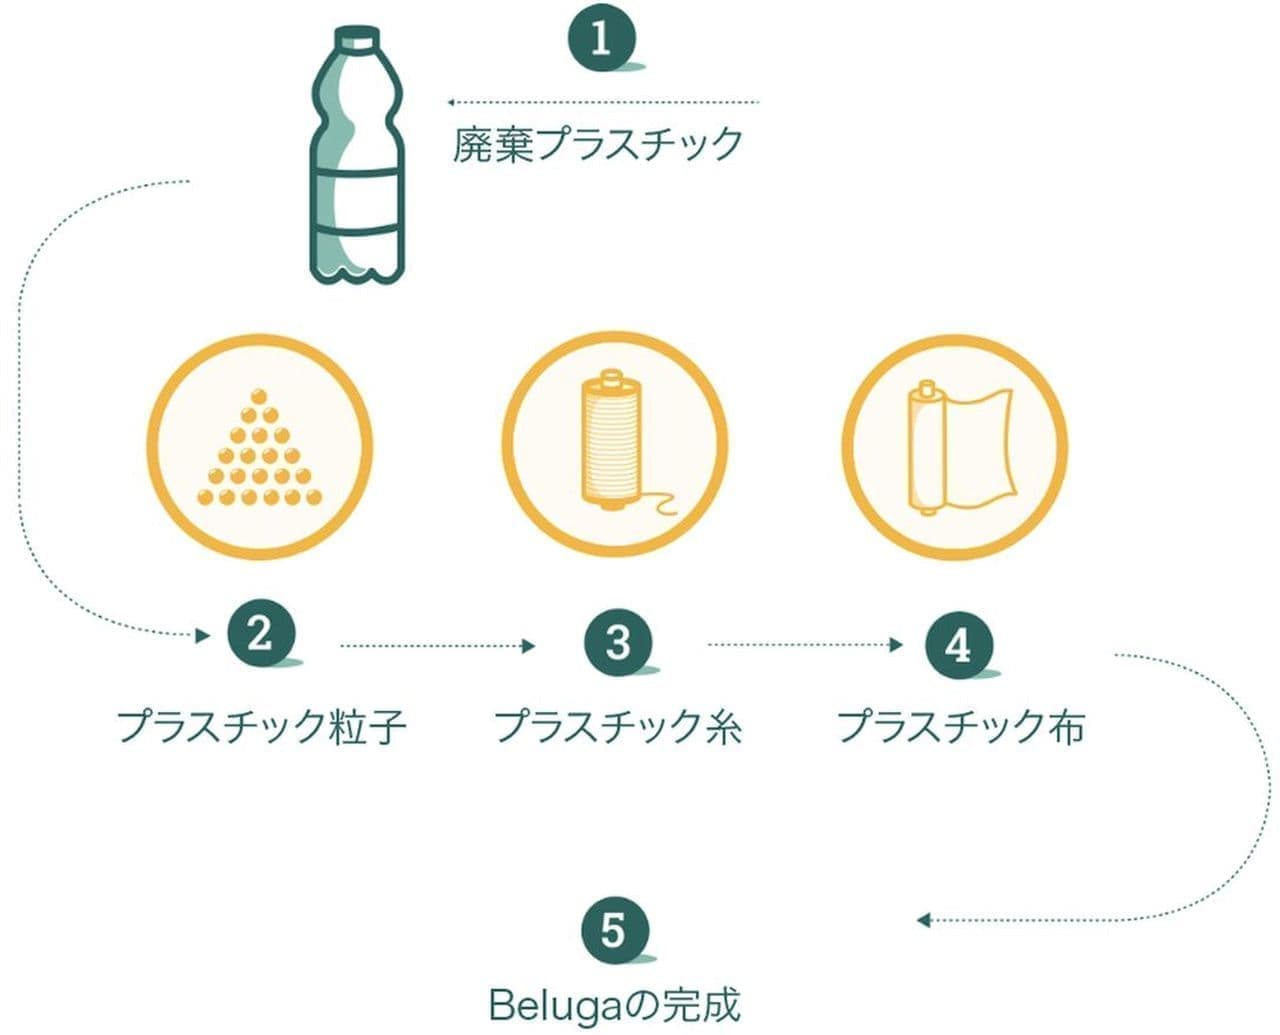 ペットボトルで作ったテント「ベルーガ」 東急ハンズ渋谷のPOPUP「Makuake SHOP」で期間限定販売